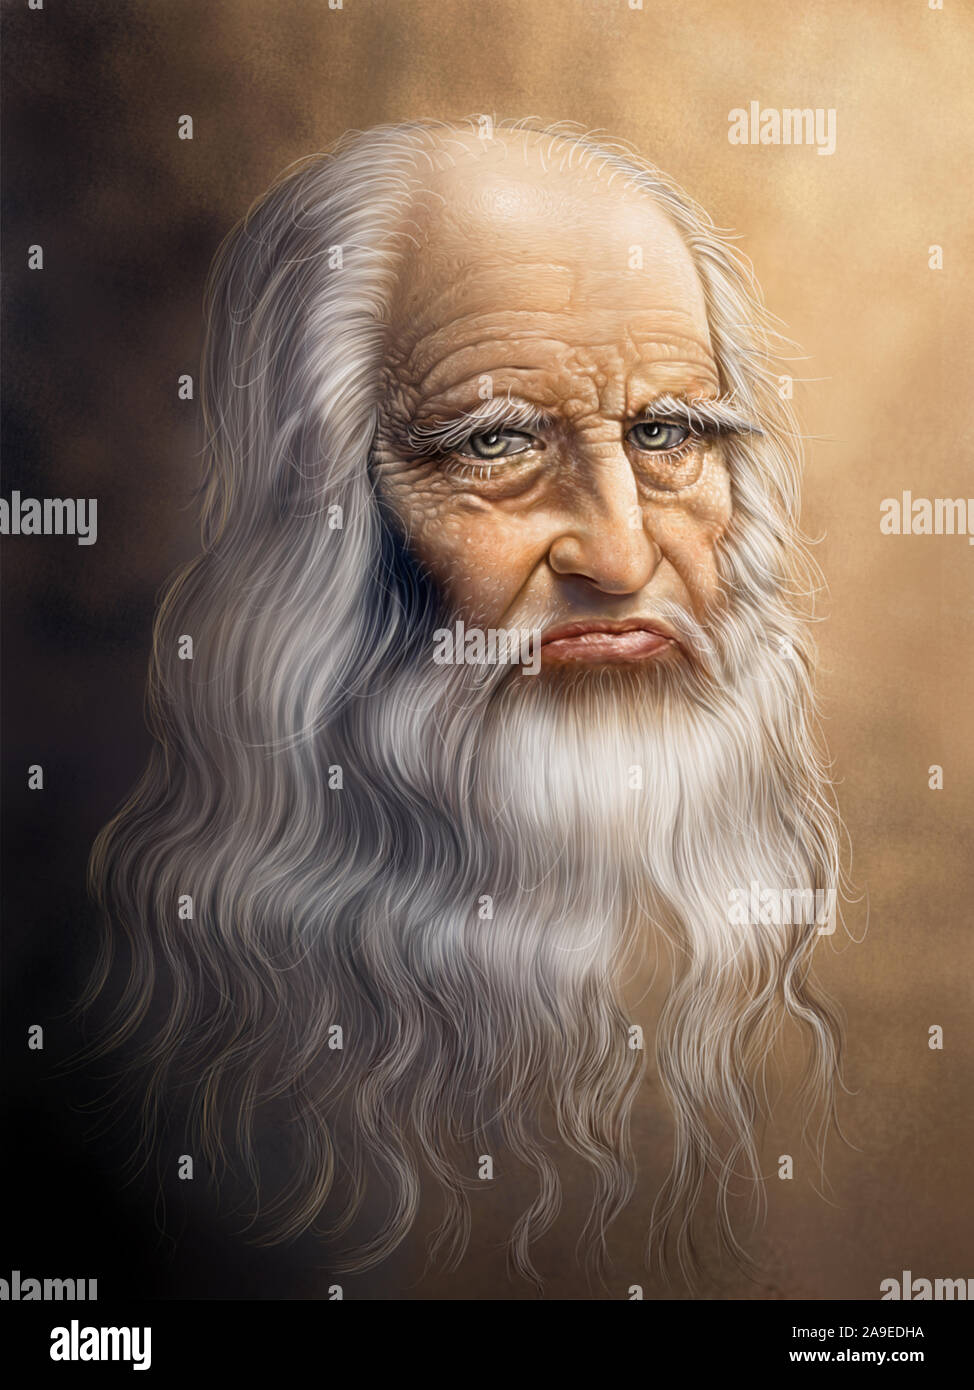 Digitale Malerei Version der ursprünglichen Portrait von Leonardo Da Vinci  Stockfotografie - Alamy